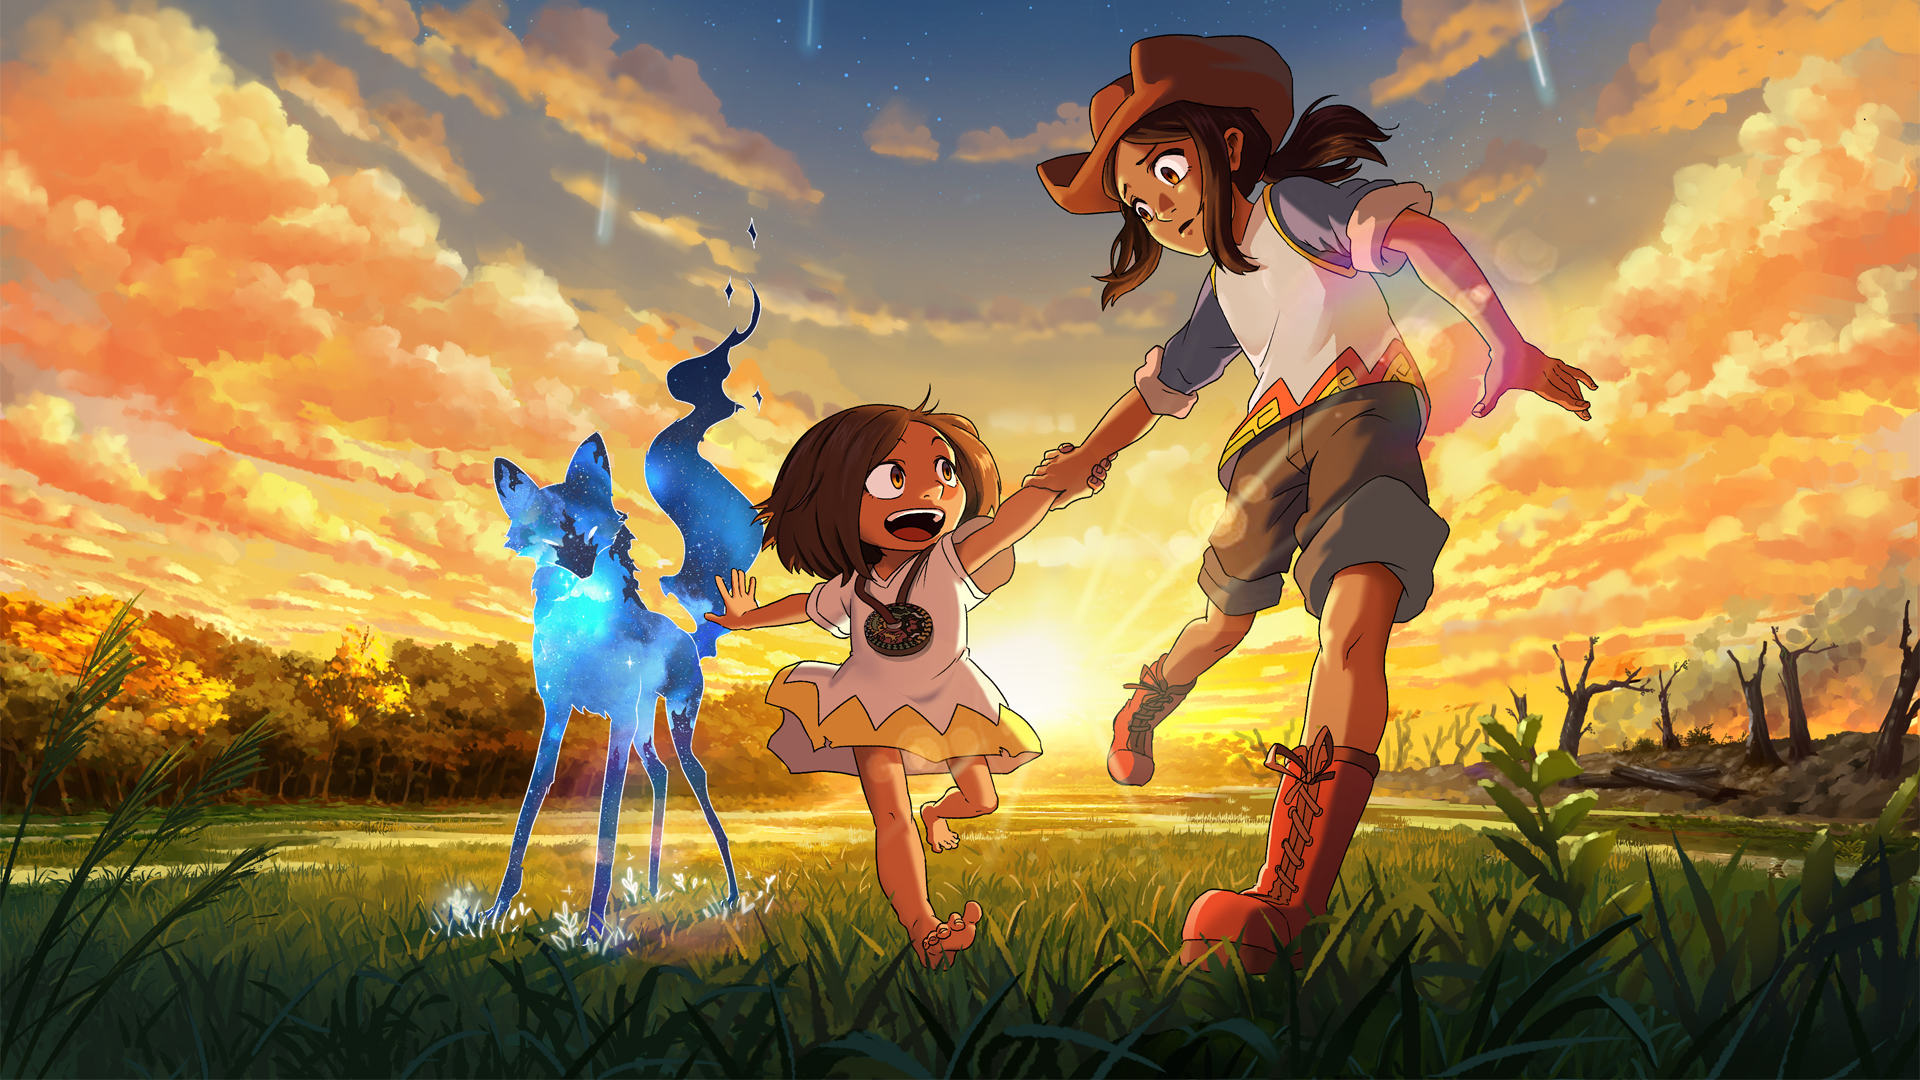 Ari e Tai, protagonistas do game Entre as Estrelas, correm por uma campina, acompanhadas de uma raposa espiritual